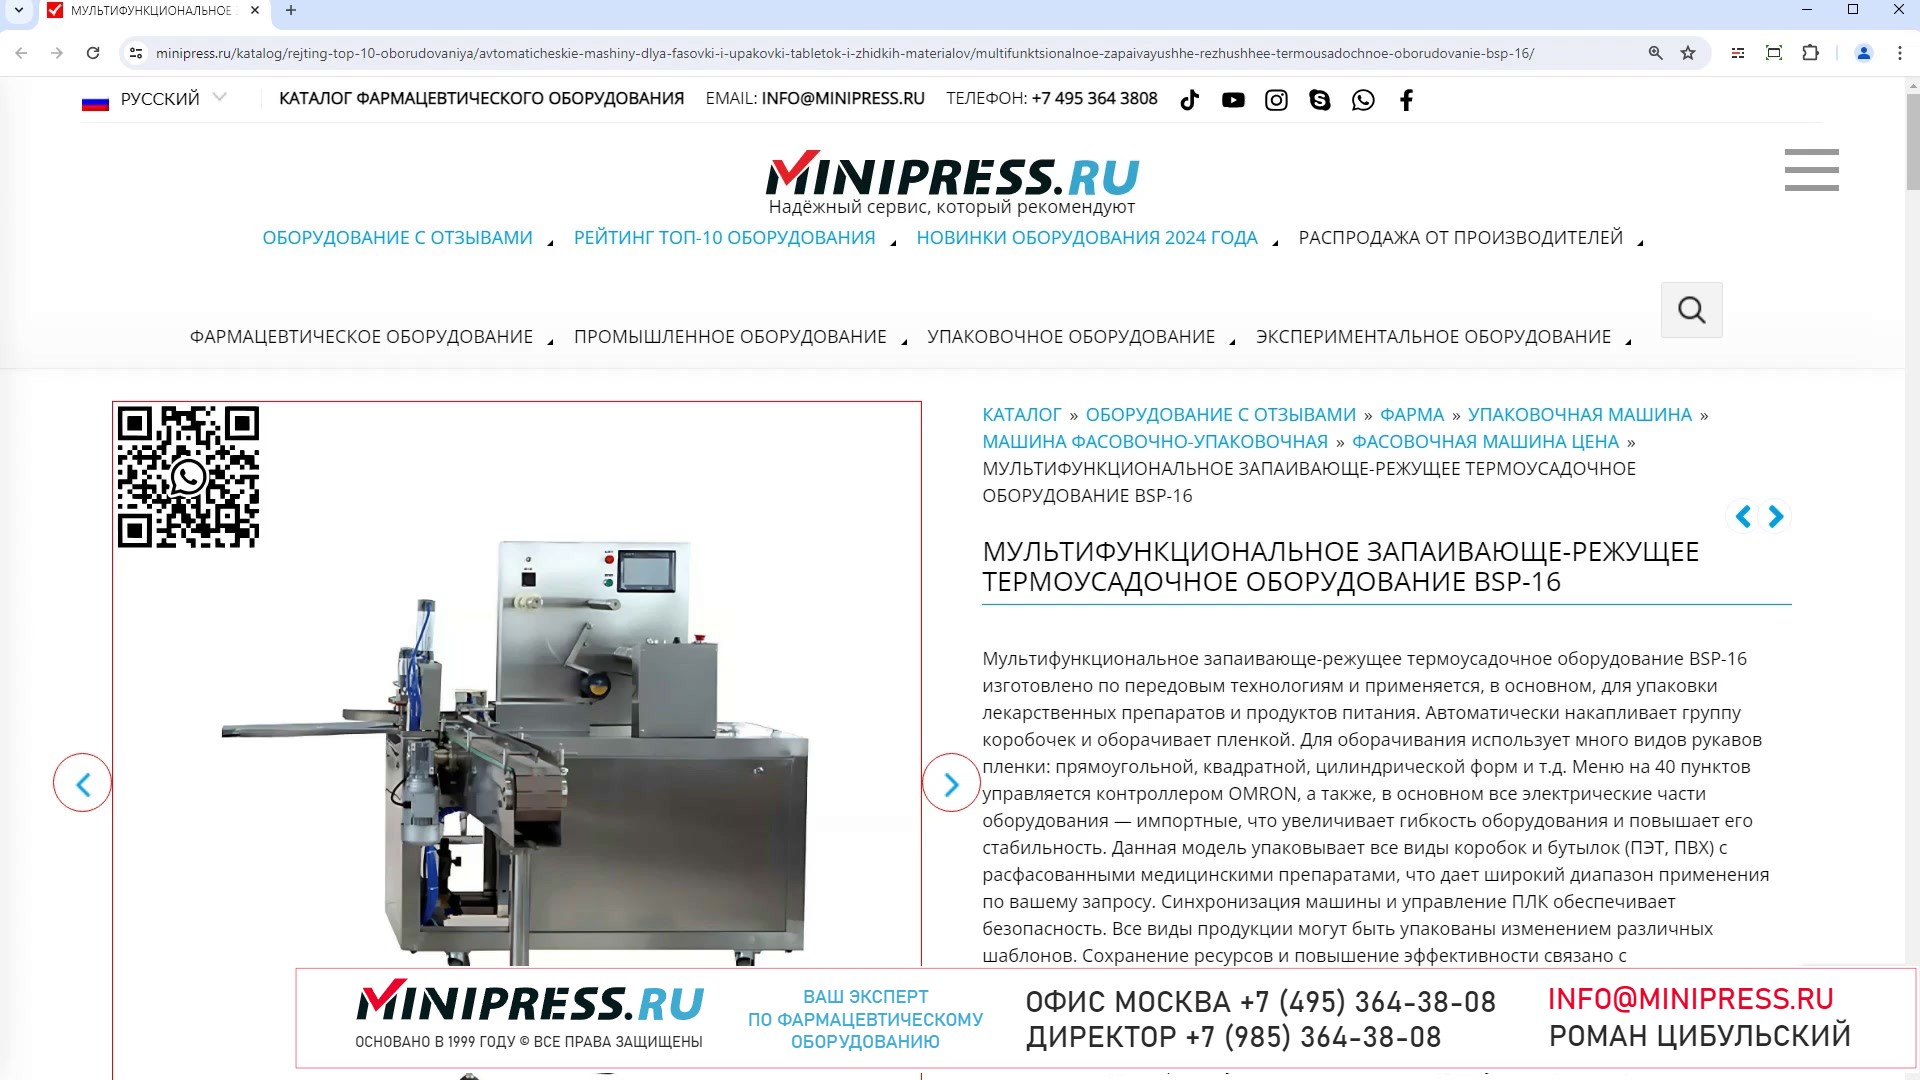 Minipress.ru Мультифункциональное запаивающе-режущее термоусадочное оборудование BSP-16